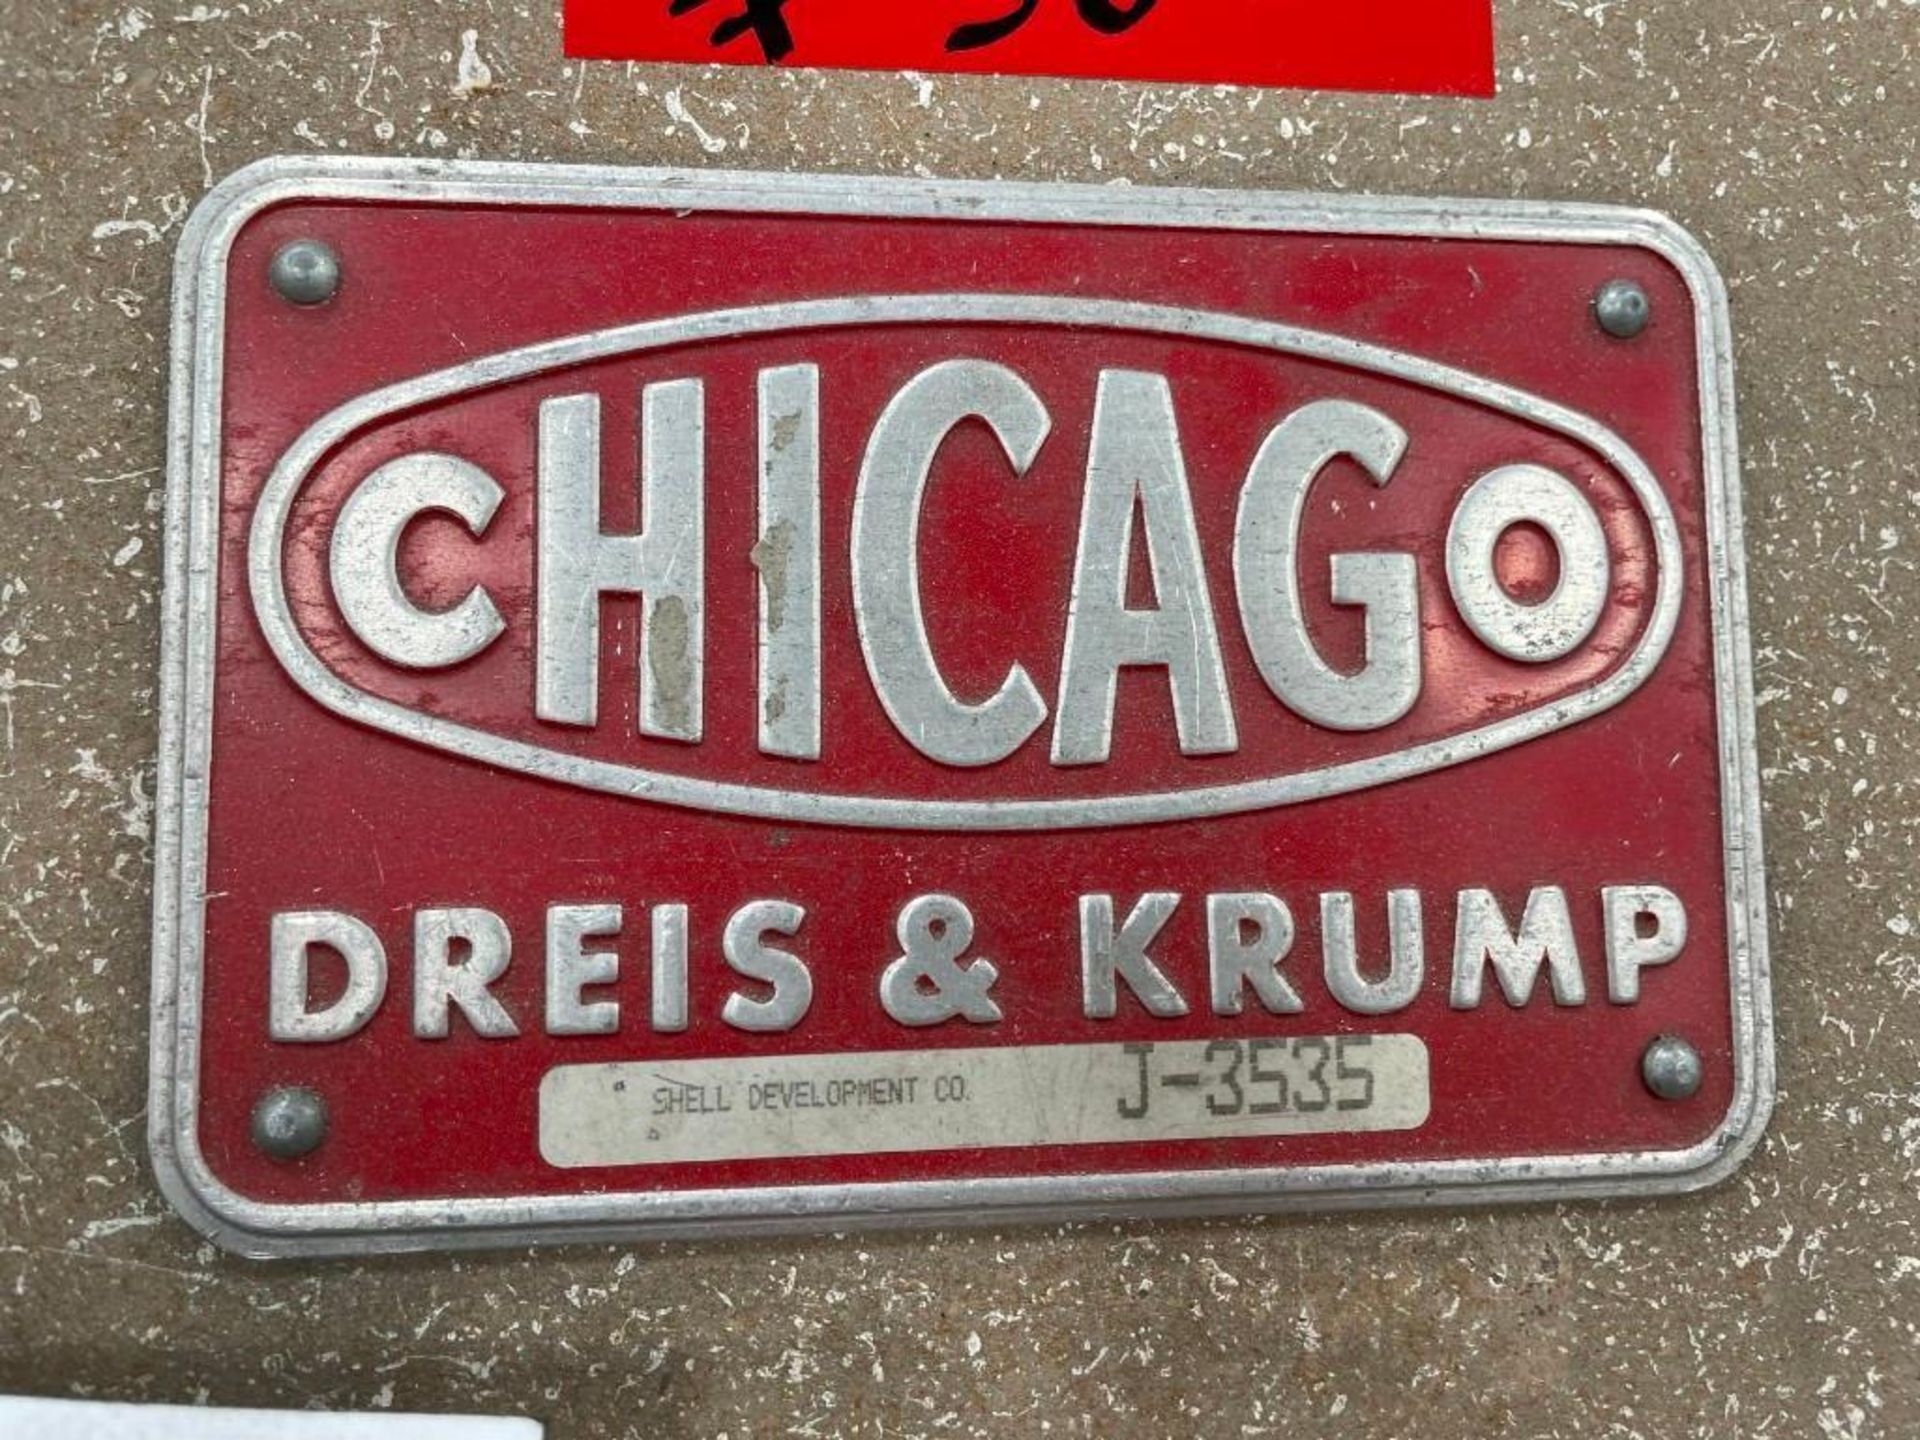 Chicago Dreis & Krump Model BPO-412-6 Leaf and Finger Brake - Image 4 of 4